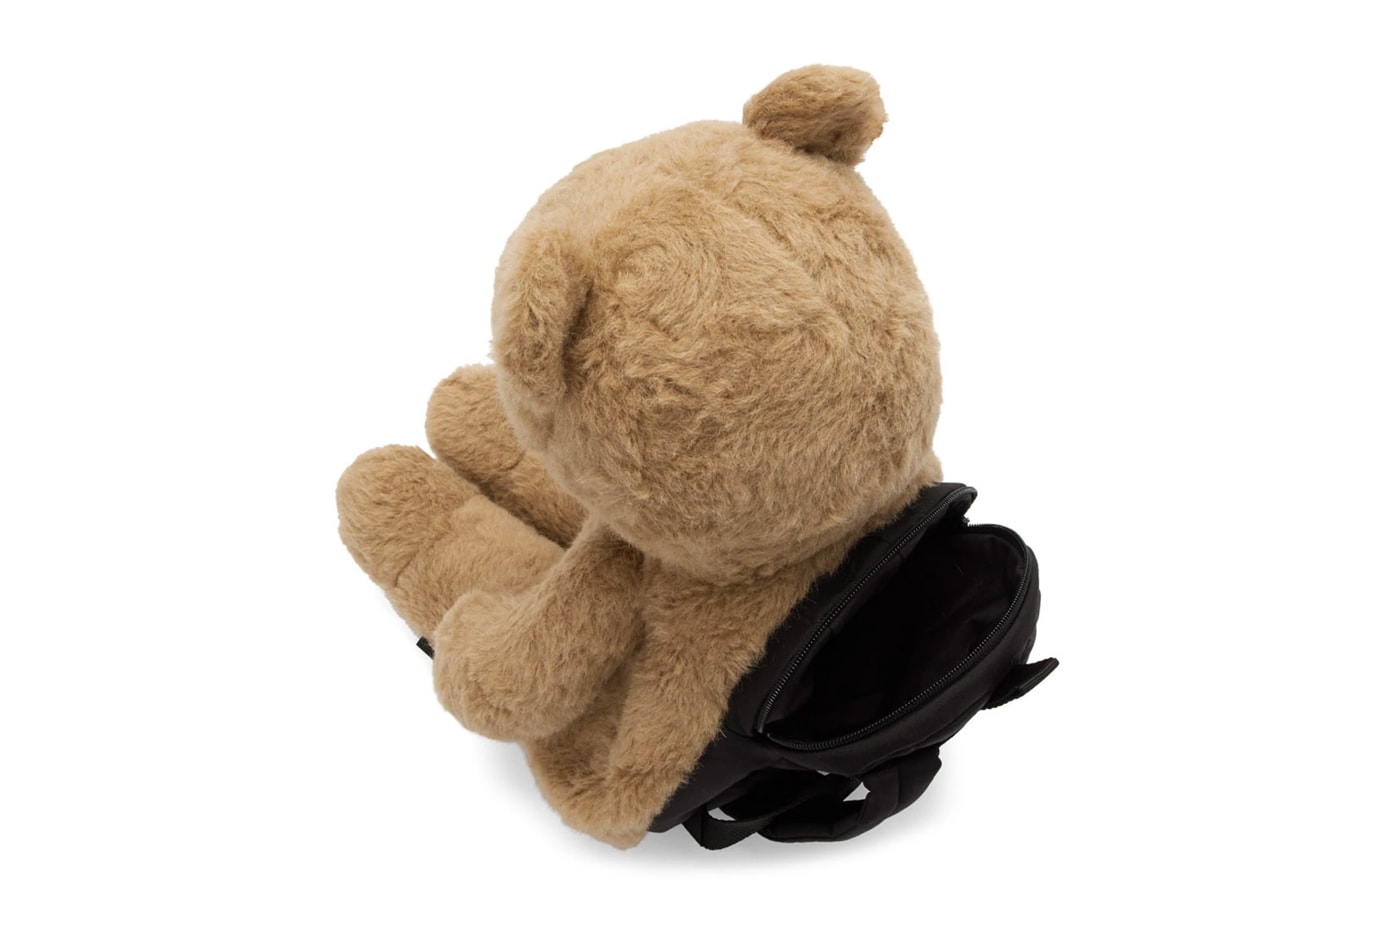 Vetements Teddy Bear Slippers & Backpack Release Info 192669M166002 192669M231002 beige tan drop date SSENSE mohair camel faux fur demna gvasalia